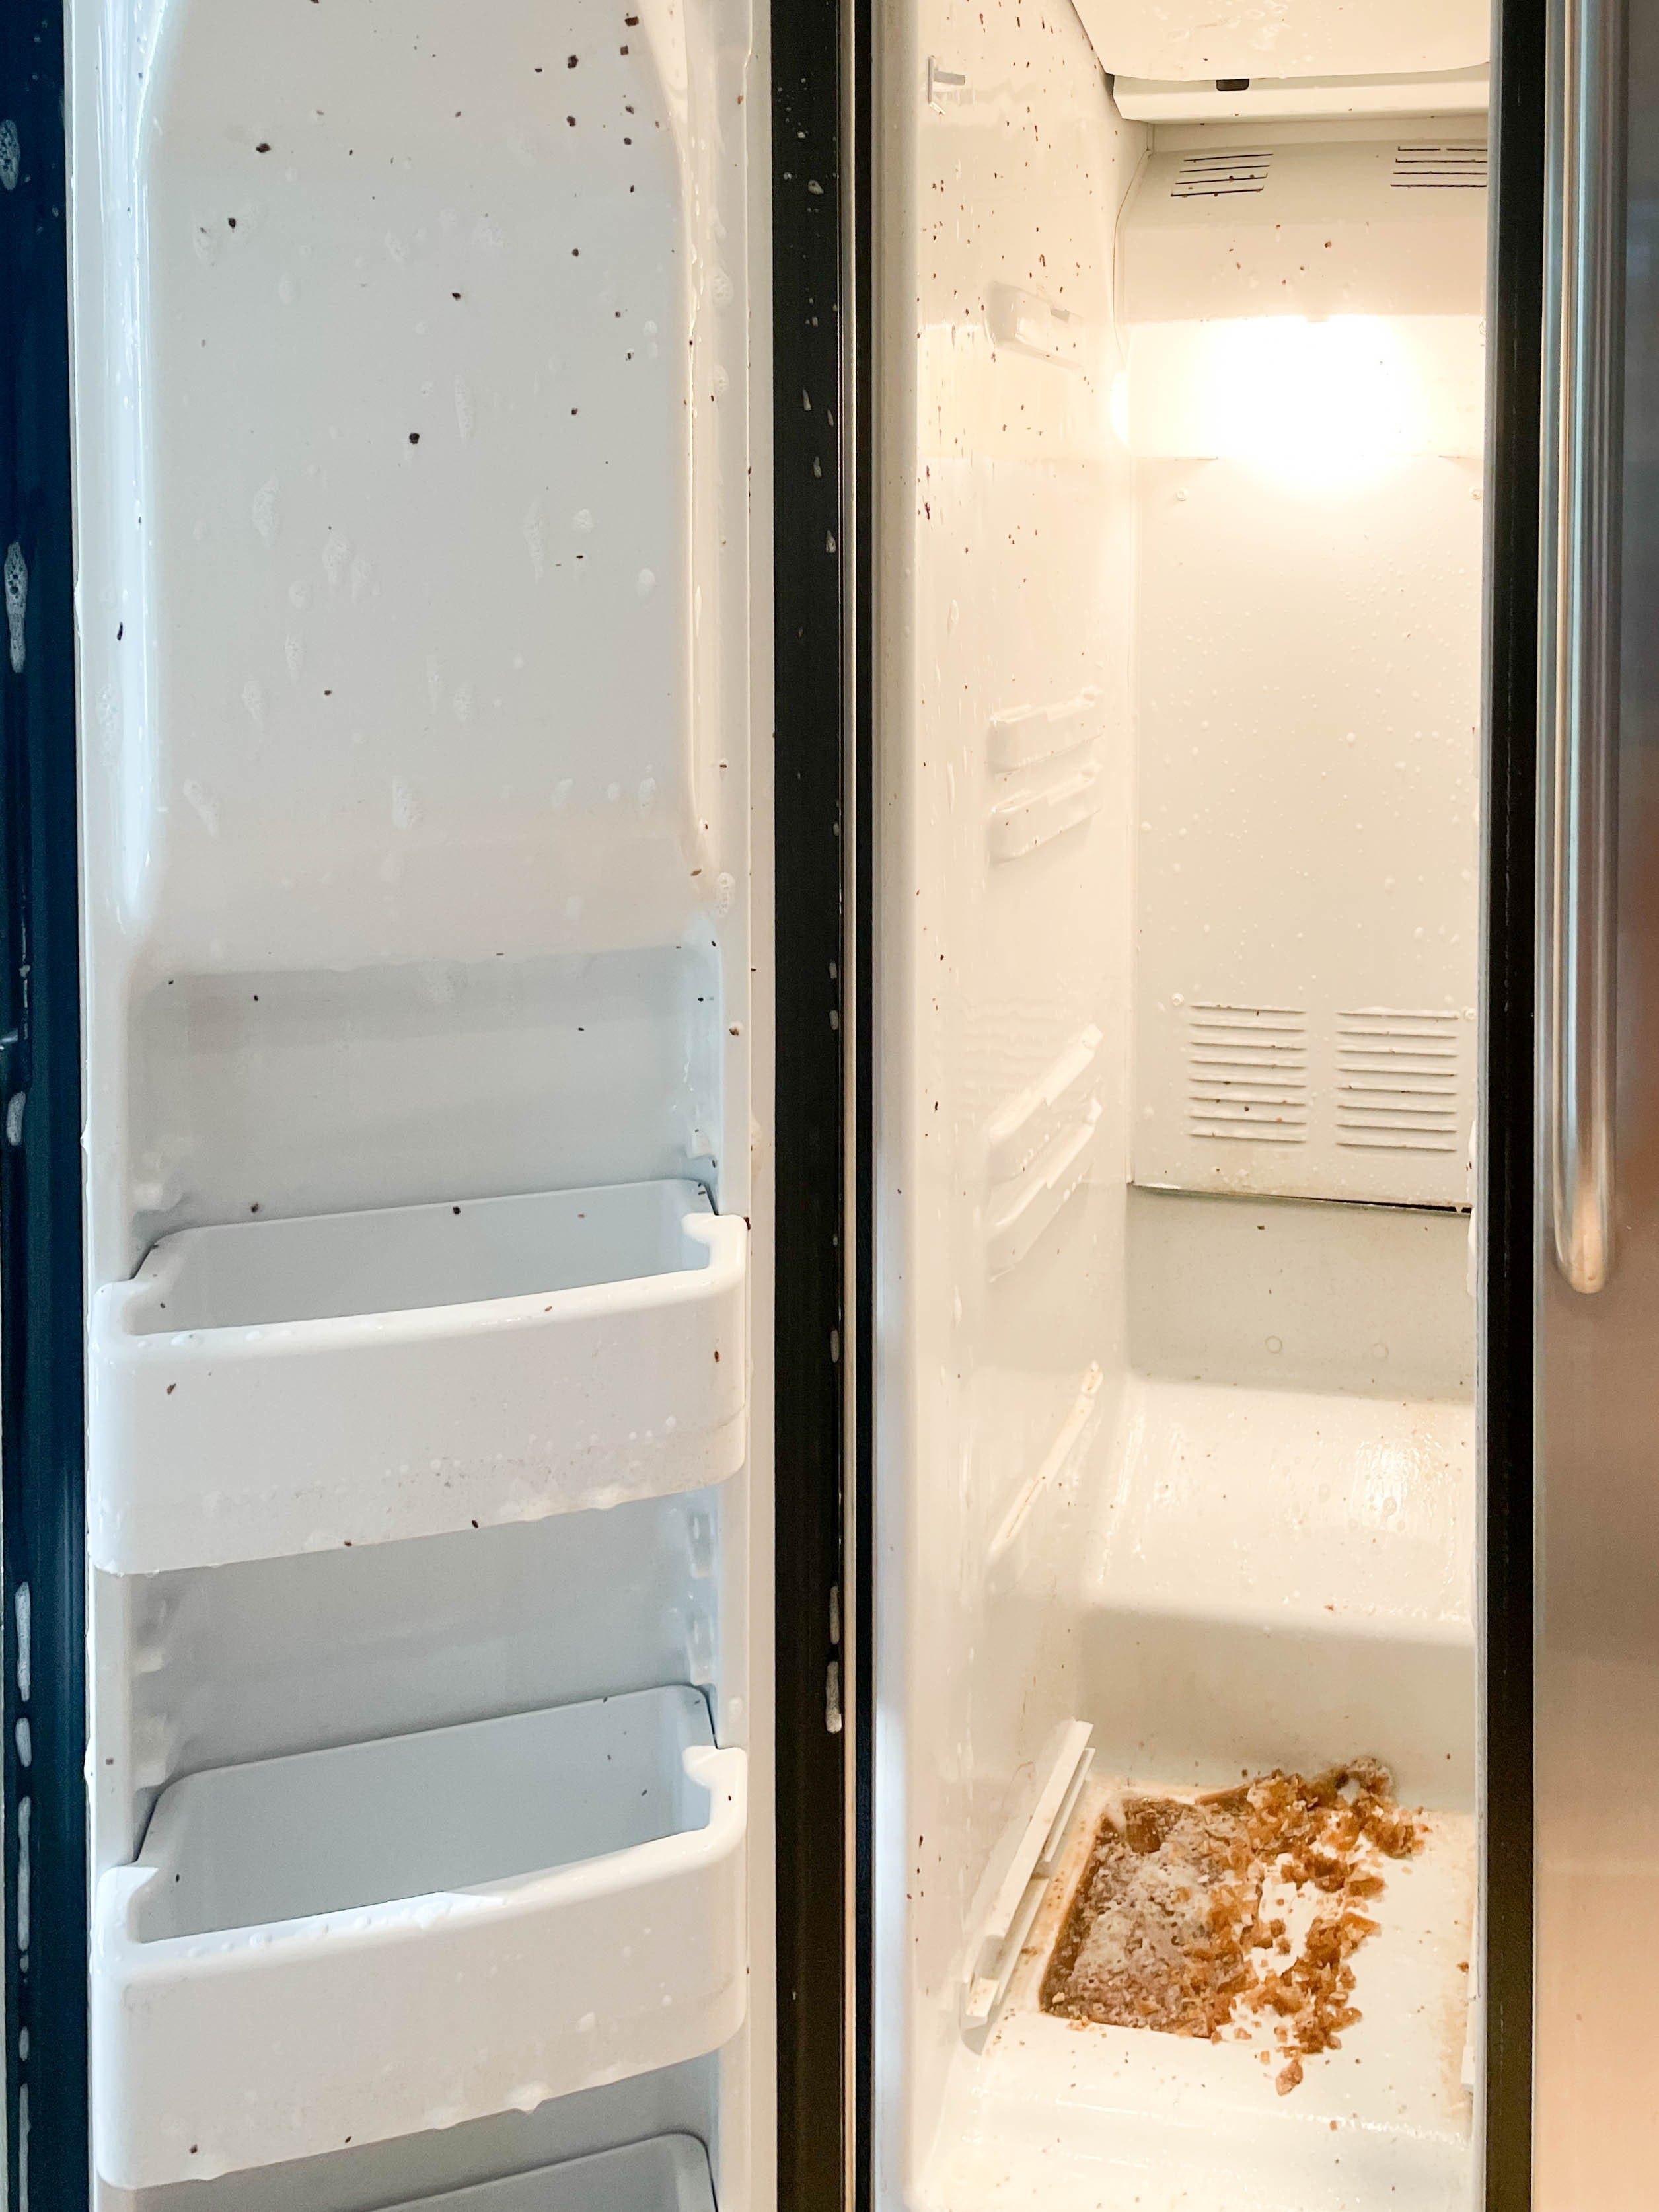 Inside fridge cleaning